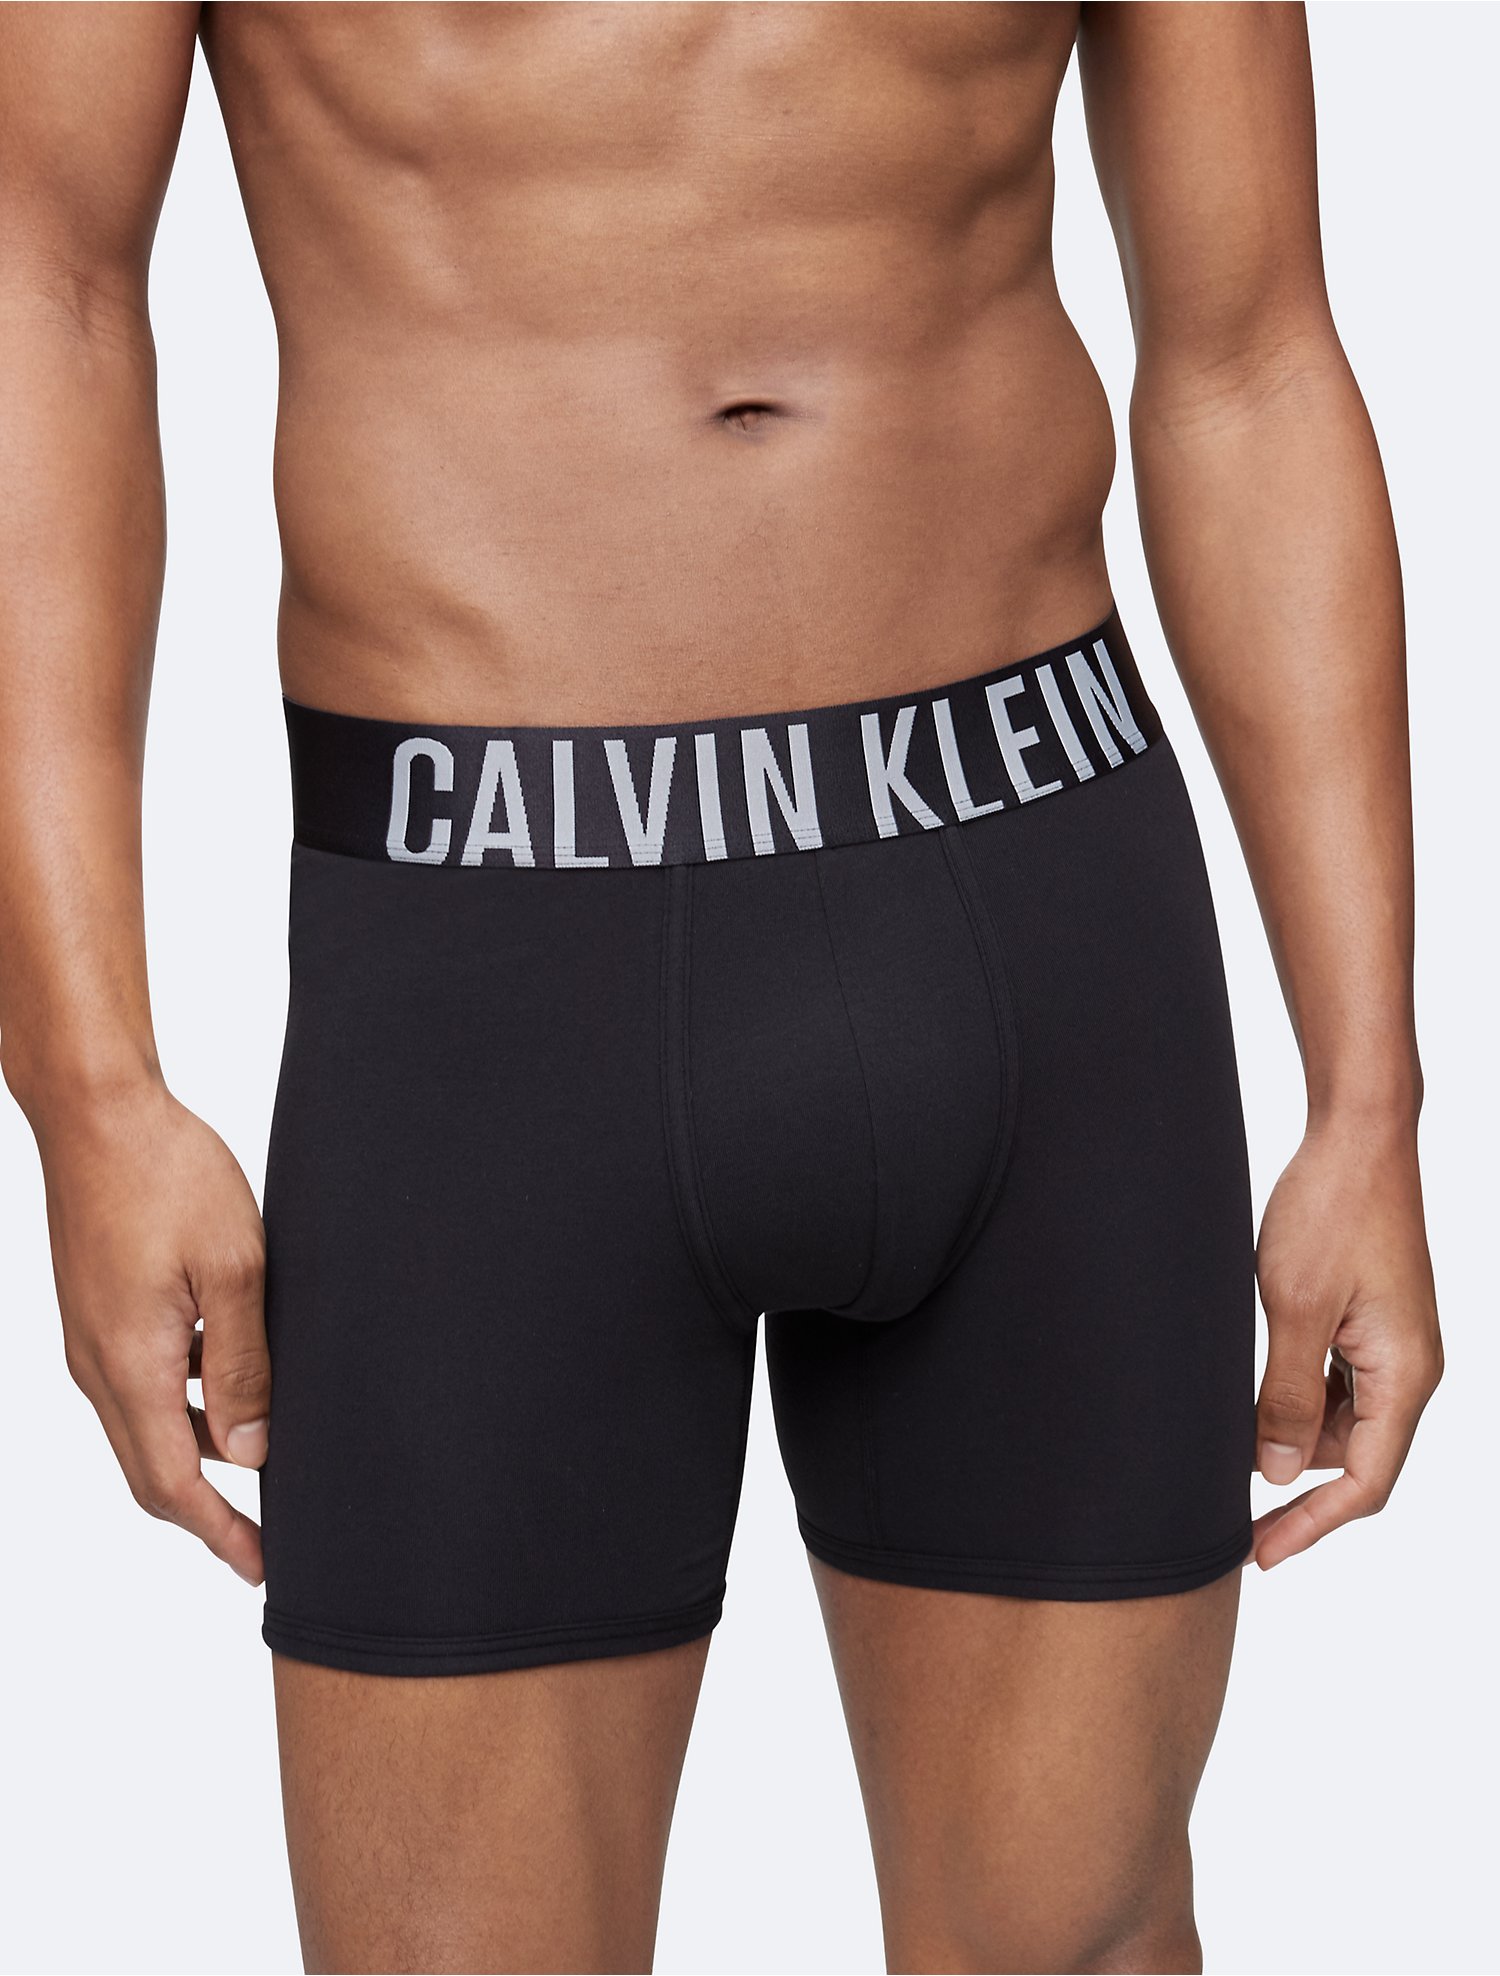 Intense Power Cotton 3-Pack Boxer Brief | Calvin Klein